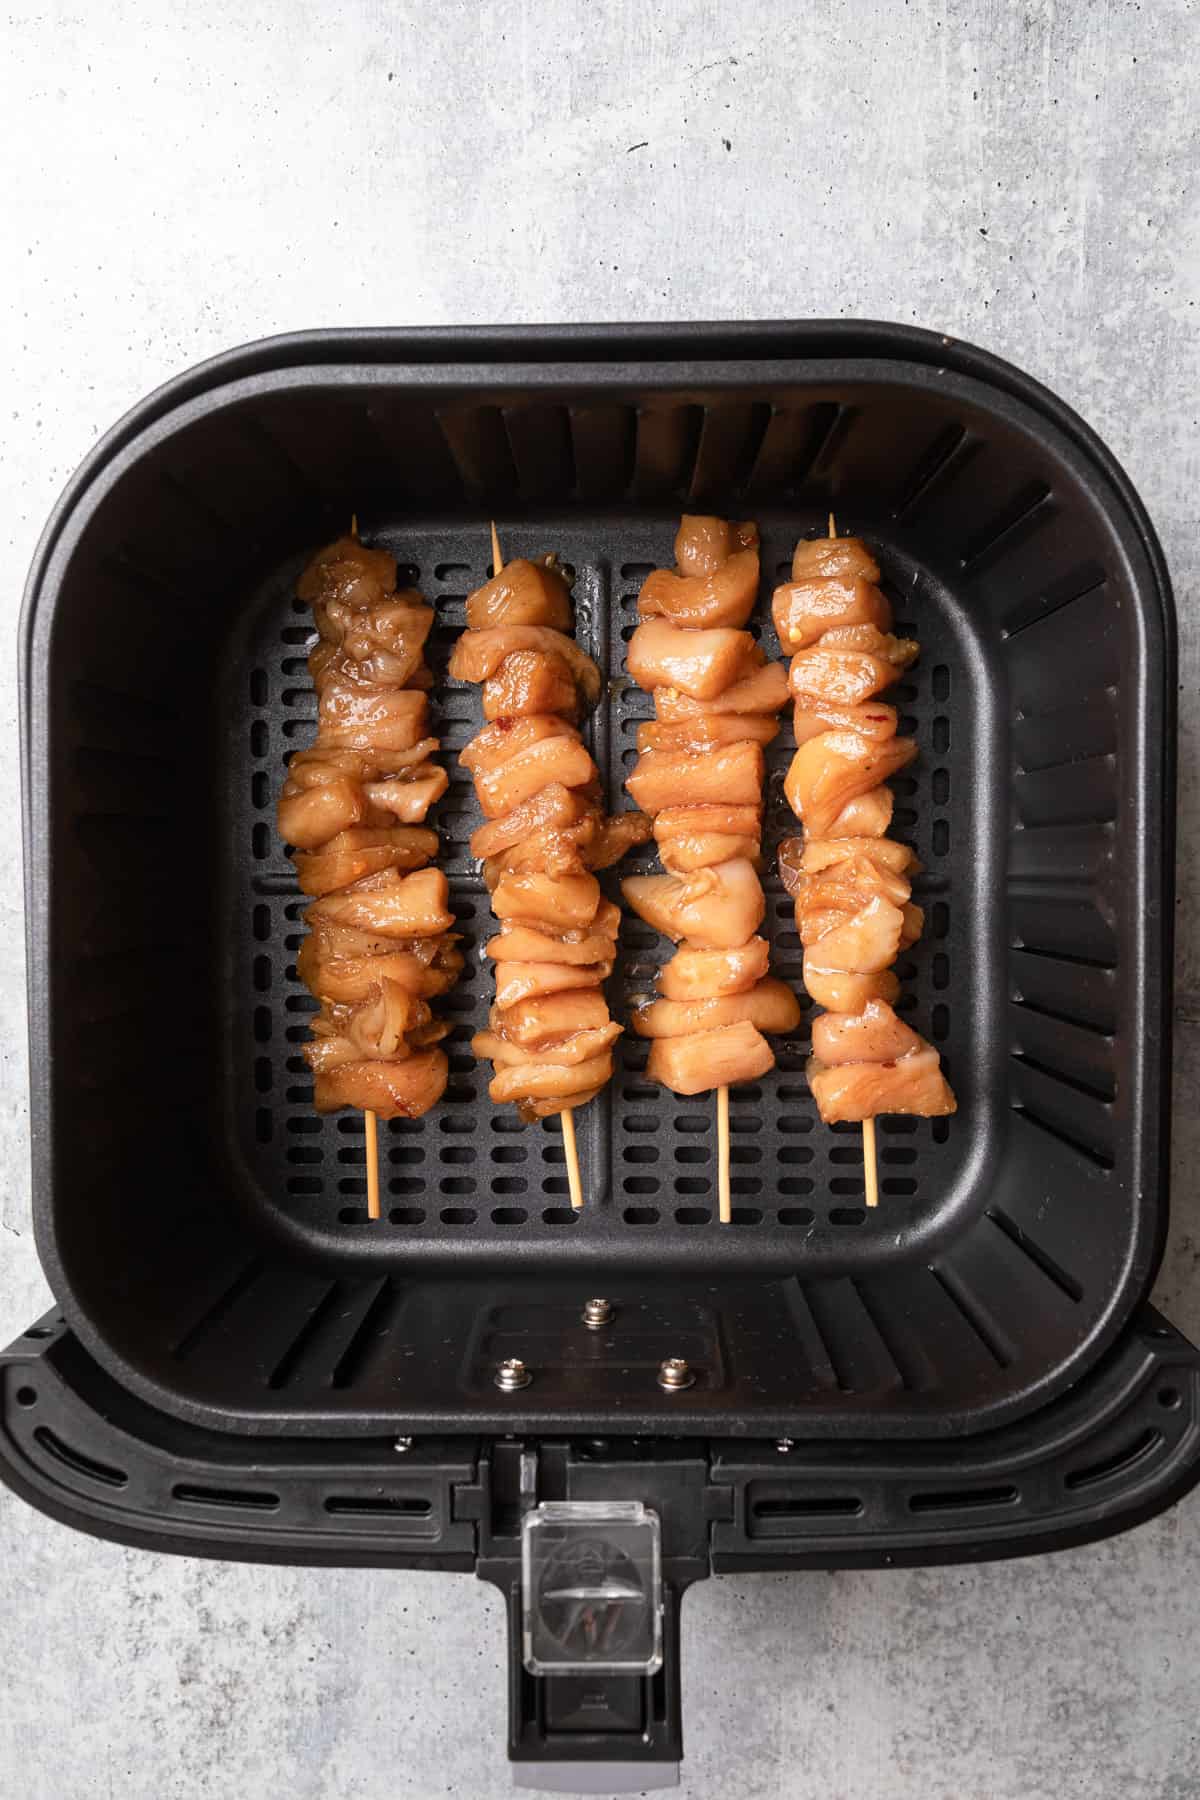 Raw skewered chicken placed in an air fryer basket.